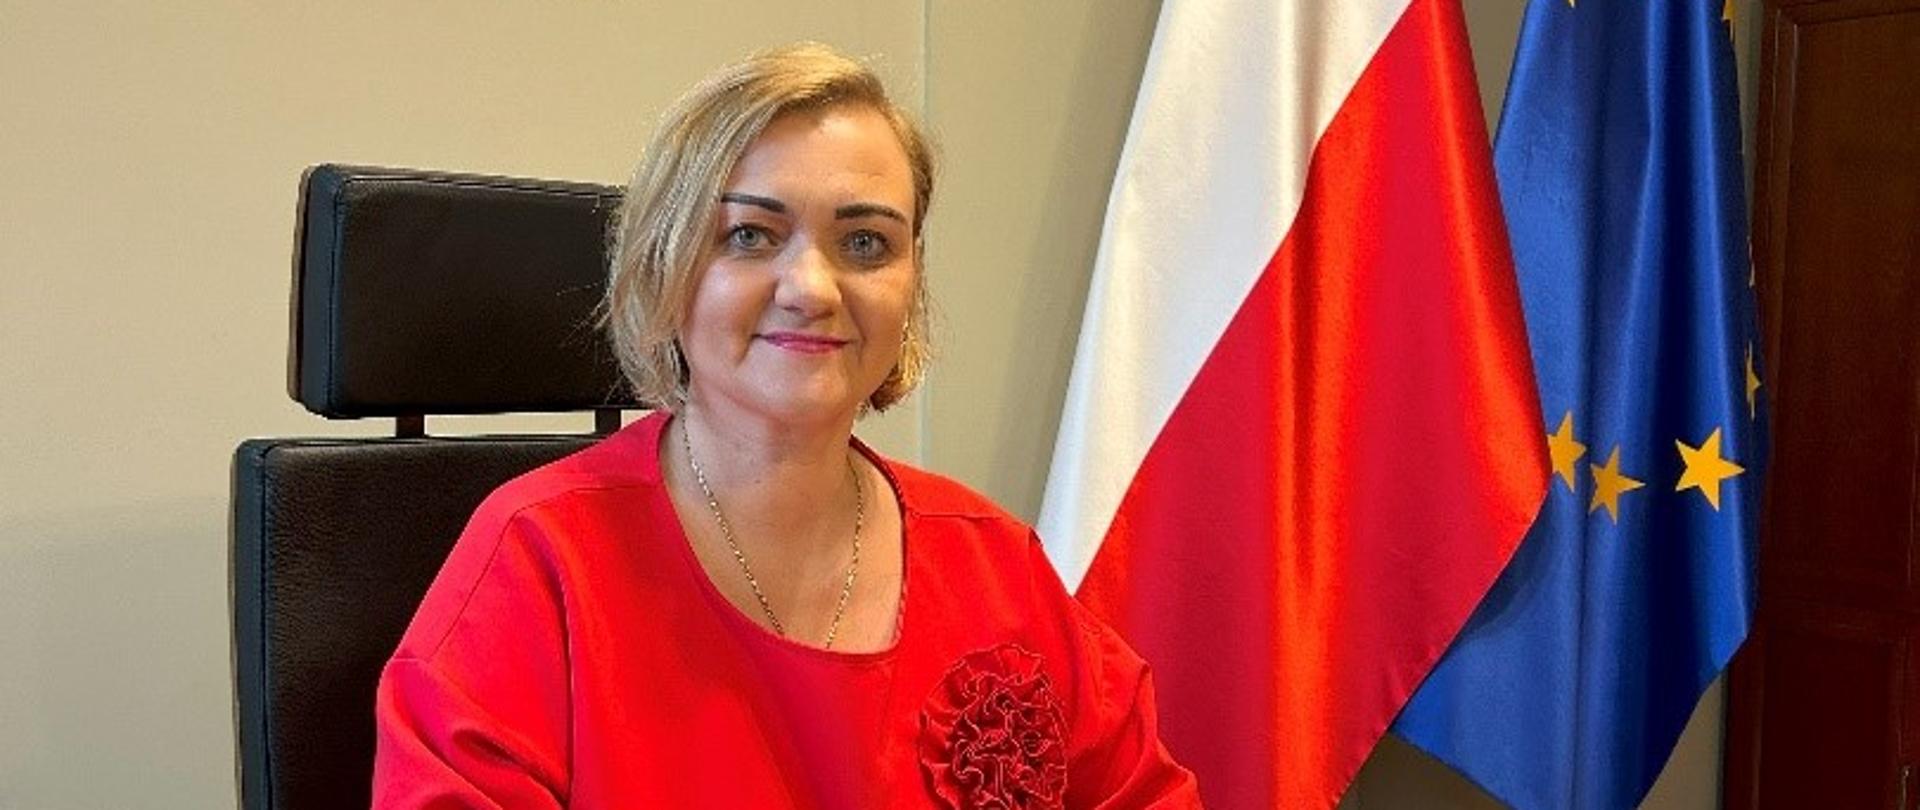 Zdjęcie przedstawia kobietę siedzącą przy biurku. W tle widoczne są flagi Polski i Unii Europejskiej